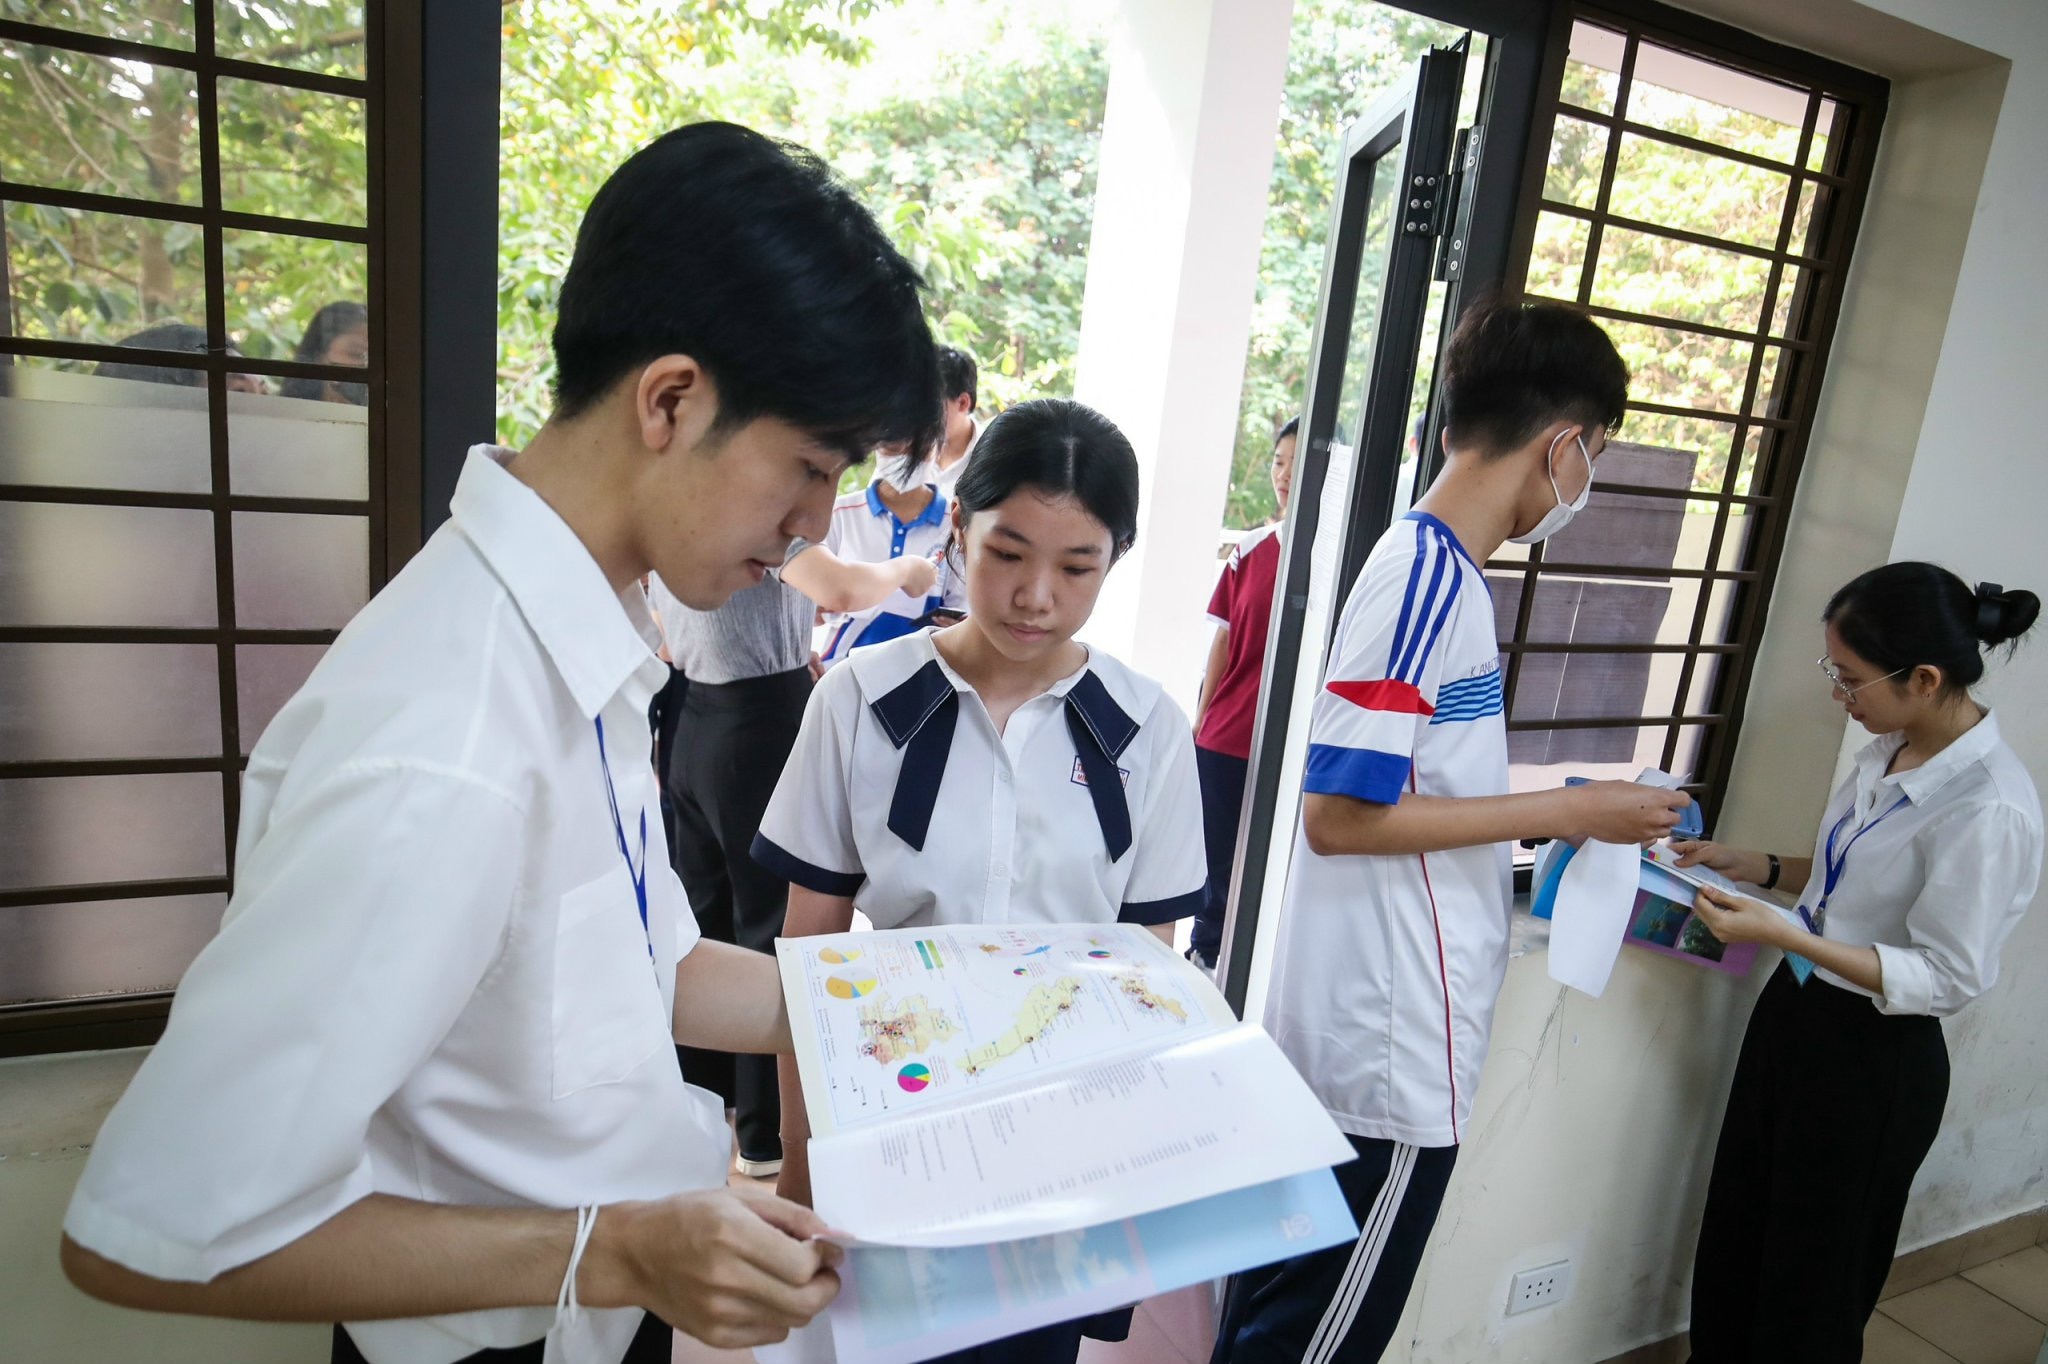 Кандидаты, участвующие в экзамене по оценке компетентности Вьетнамского национального университета Хошимина в этом году